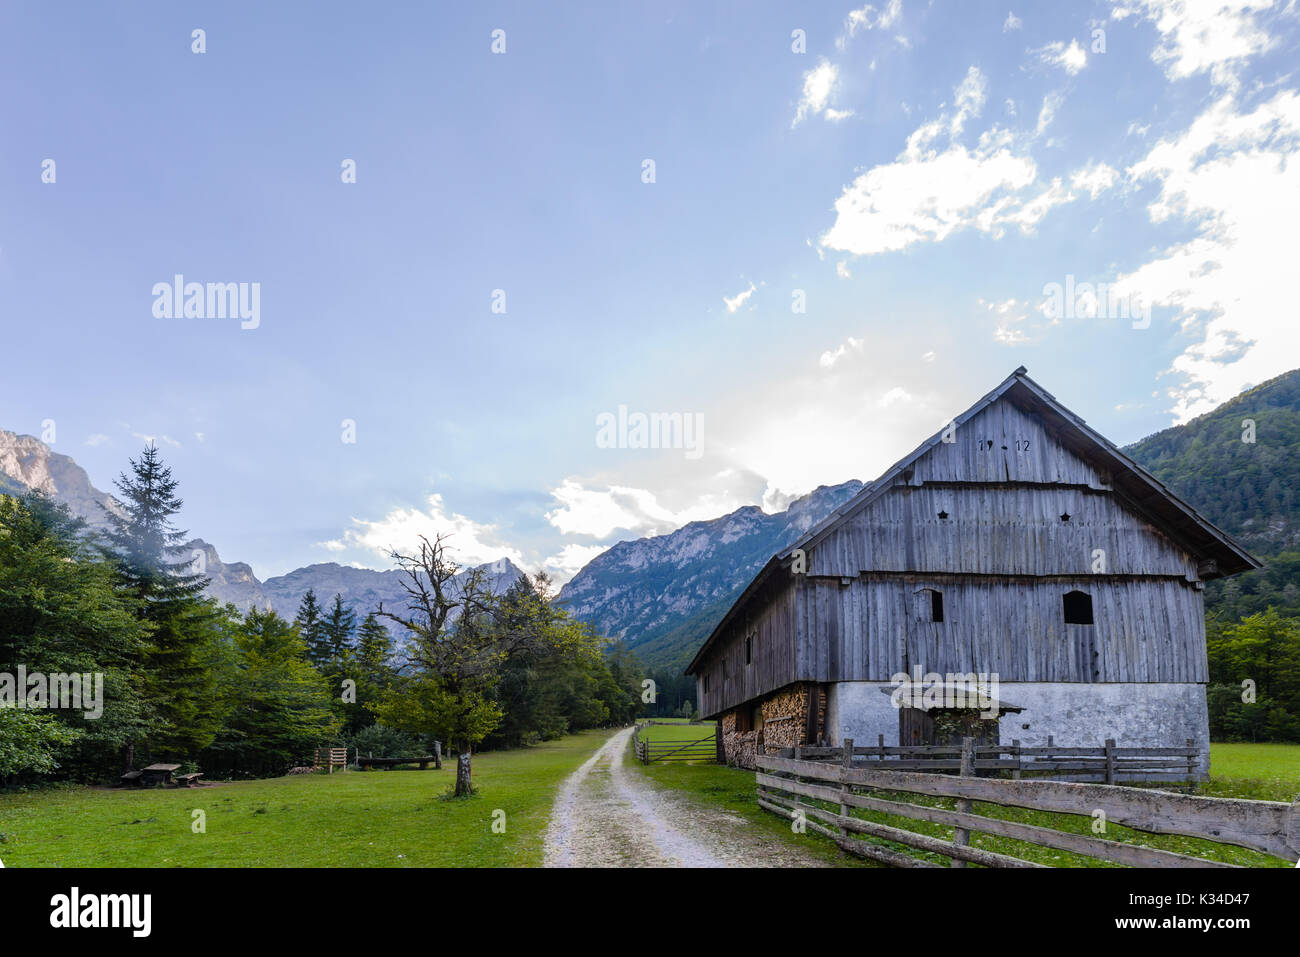 Maison de ferme de montagne, cabane dans les Alpes européennes, Robanov kot, situé en Slovénie, de randonnée et d'escalade populaire place avec picturescue view Banque D'Images